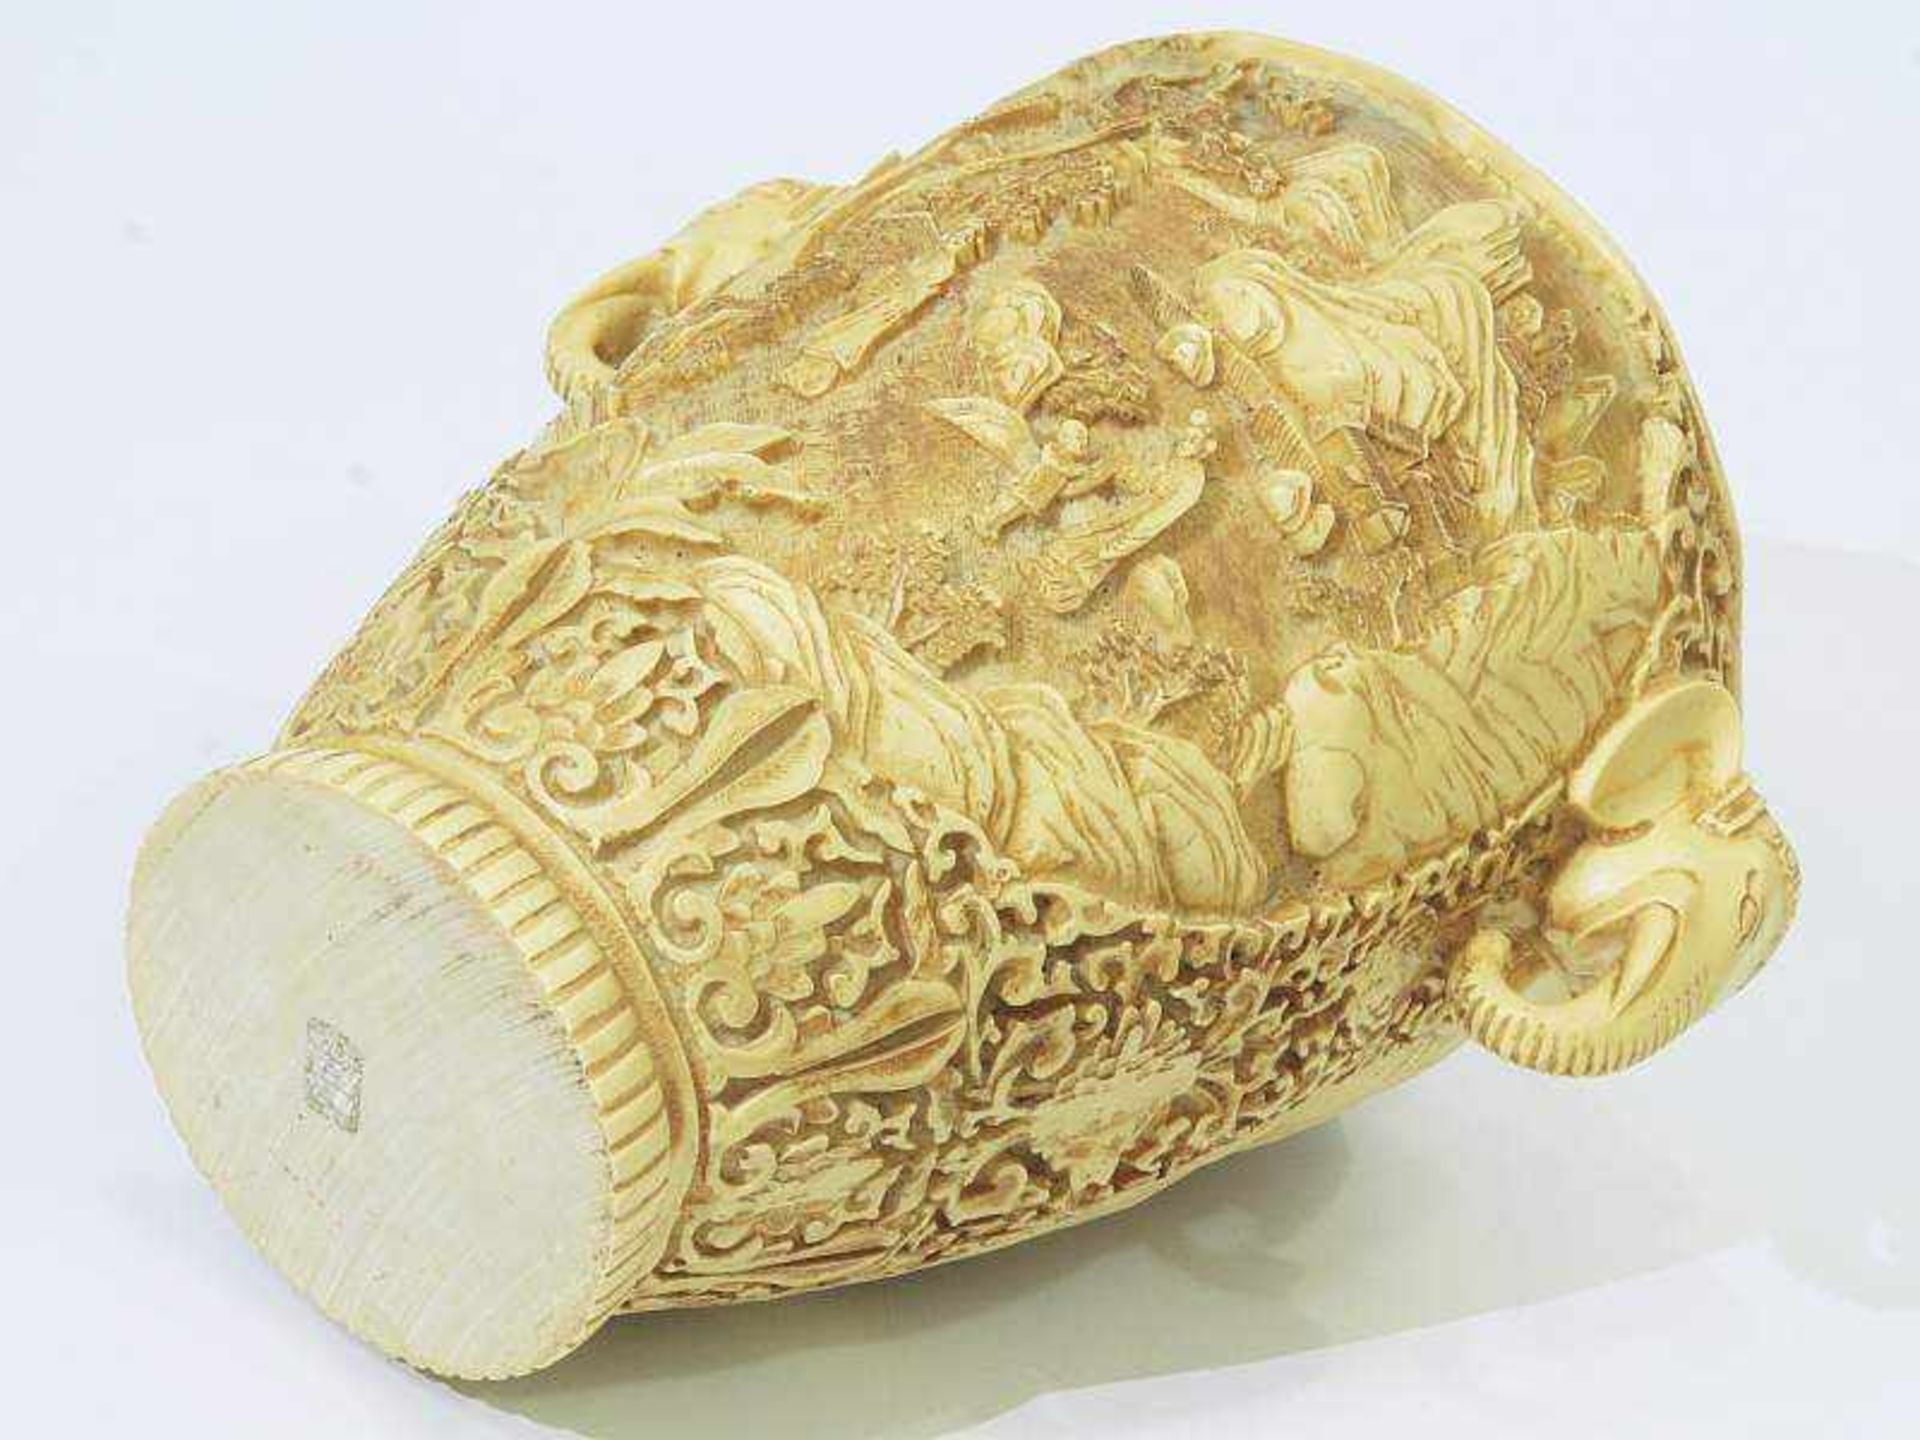 Vase mit Elefantenkopf-Handhaben. Vase mit Elefantenkopf-Handhaben. Asien, 20. Jahrhundert. - Bild 4 aus 6